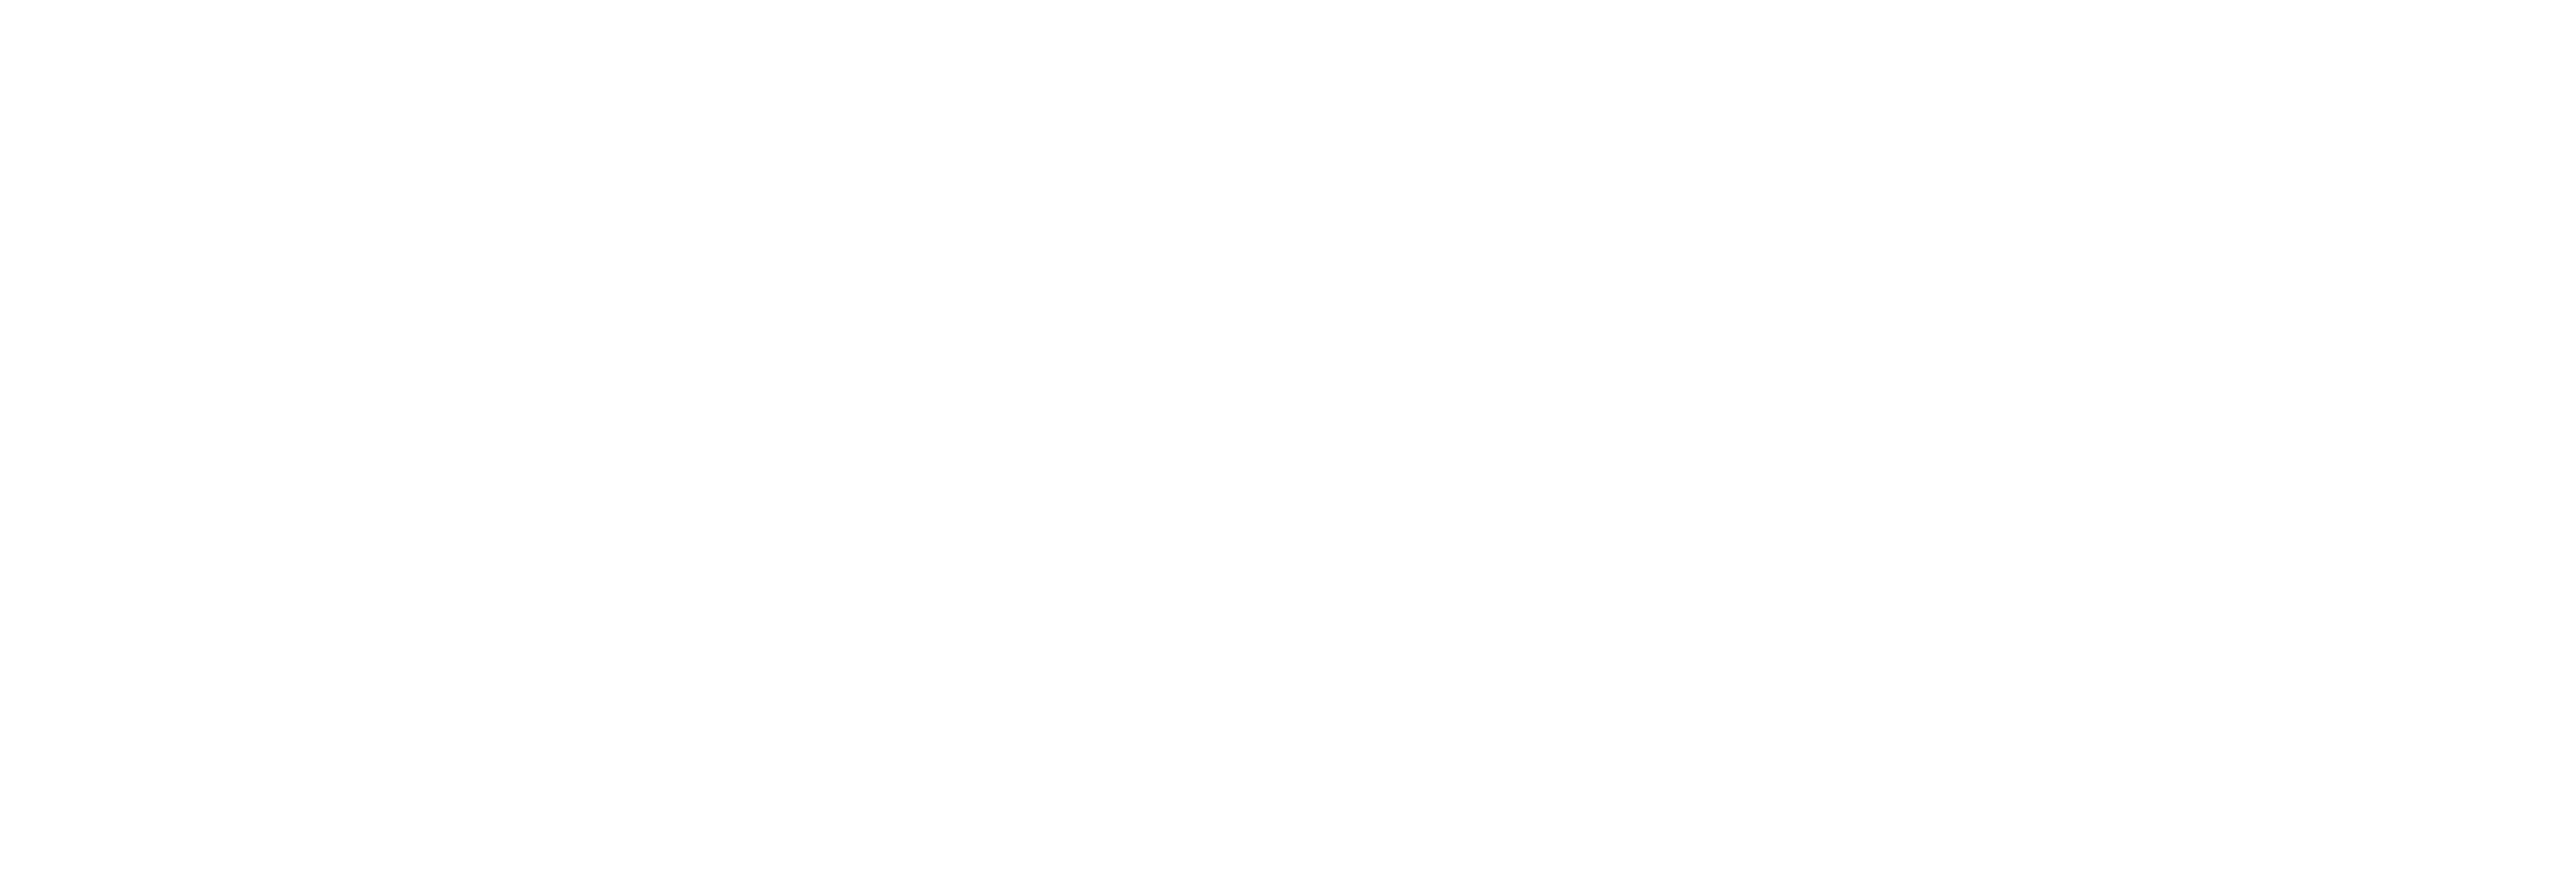 Red Dead Redemption 2 logosu